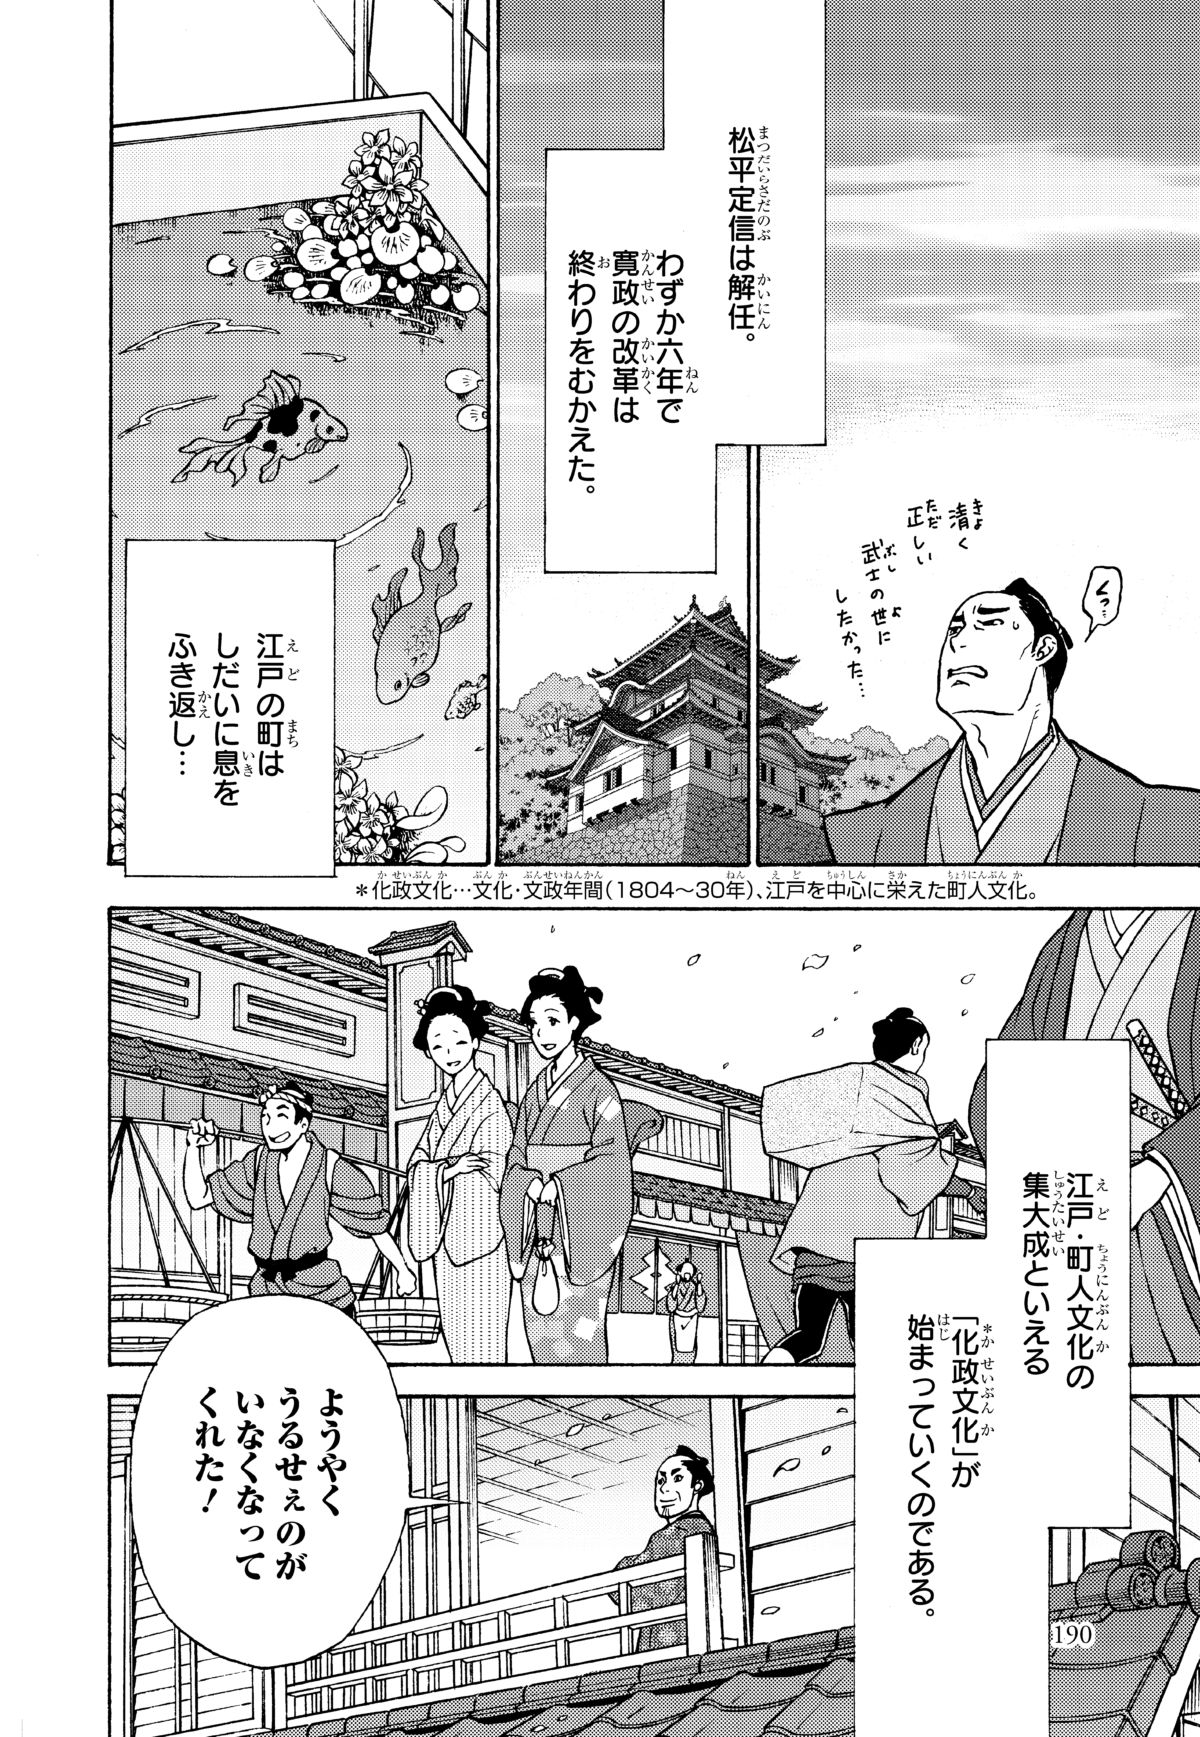 連載 日本の歴史 10 花咲く町人文化 その6 江戸で栄えた化政文化 ダ ヴィンチニュース